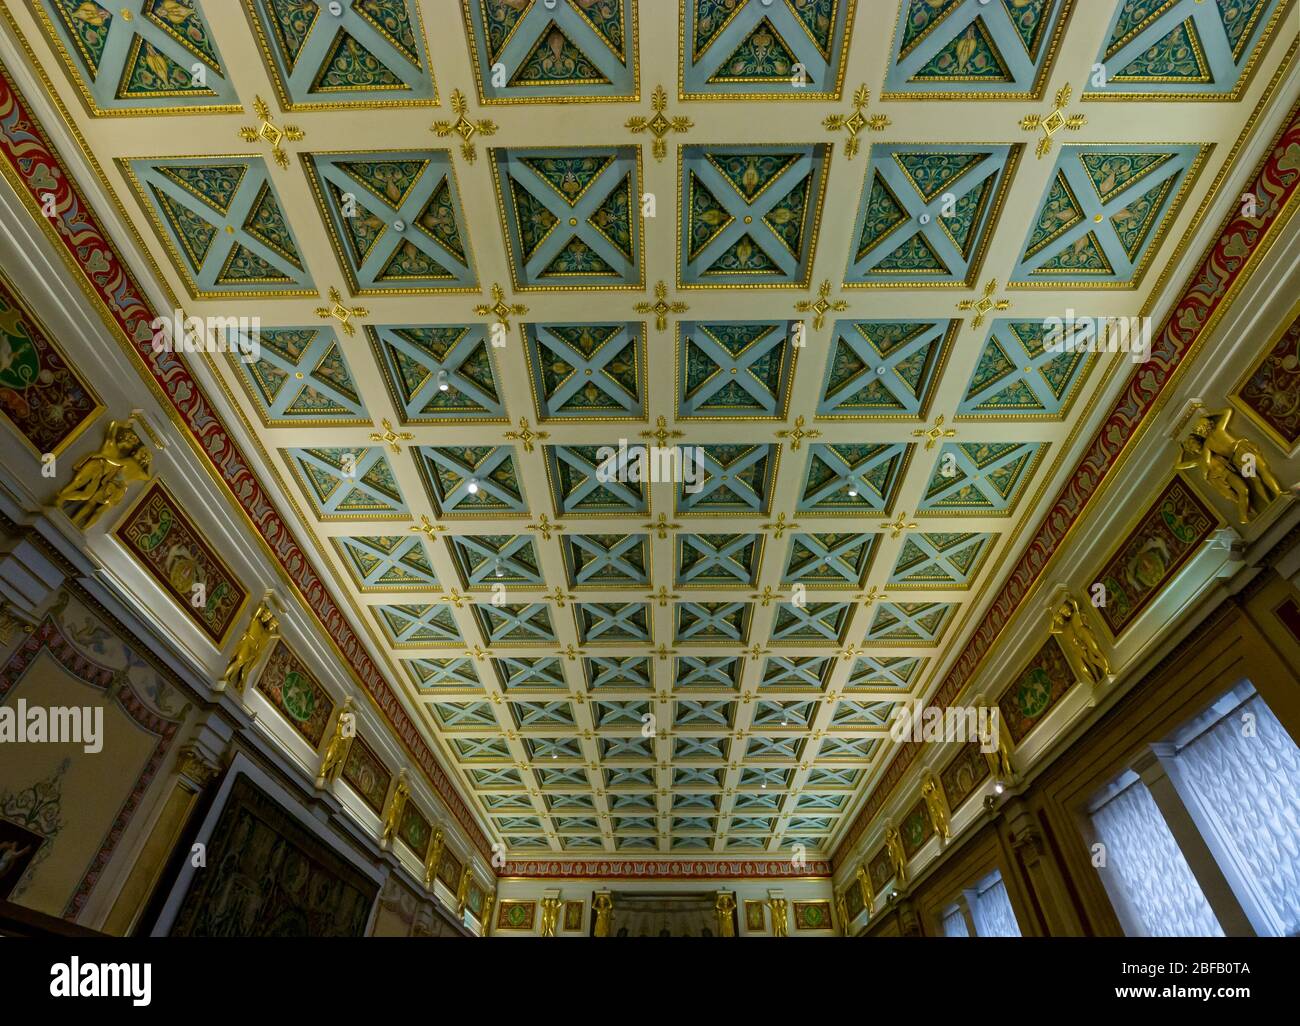 Der Majolica-Raum reich verzierten Holz bemalte Decke, Eremitage State Museum, Winterpalast, St. Petersburg, Russische Föderation Stockfoto